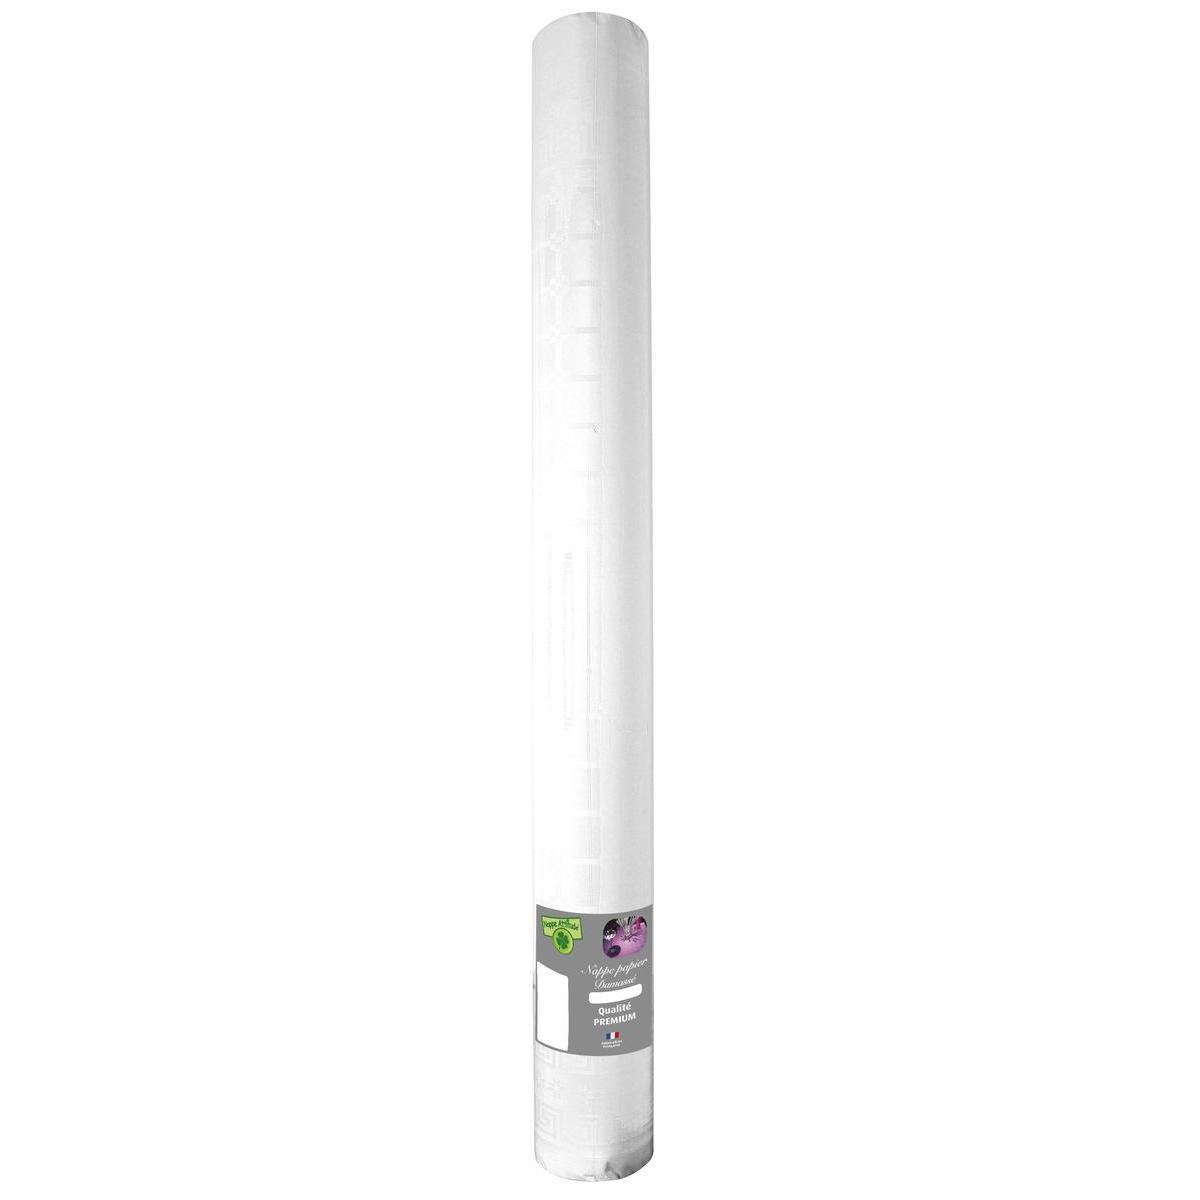 Nappe effet damassé - Papier - 50 m x 120 cm - Blanc